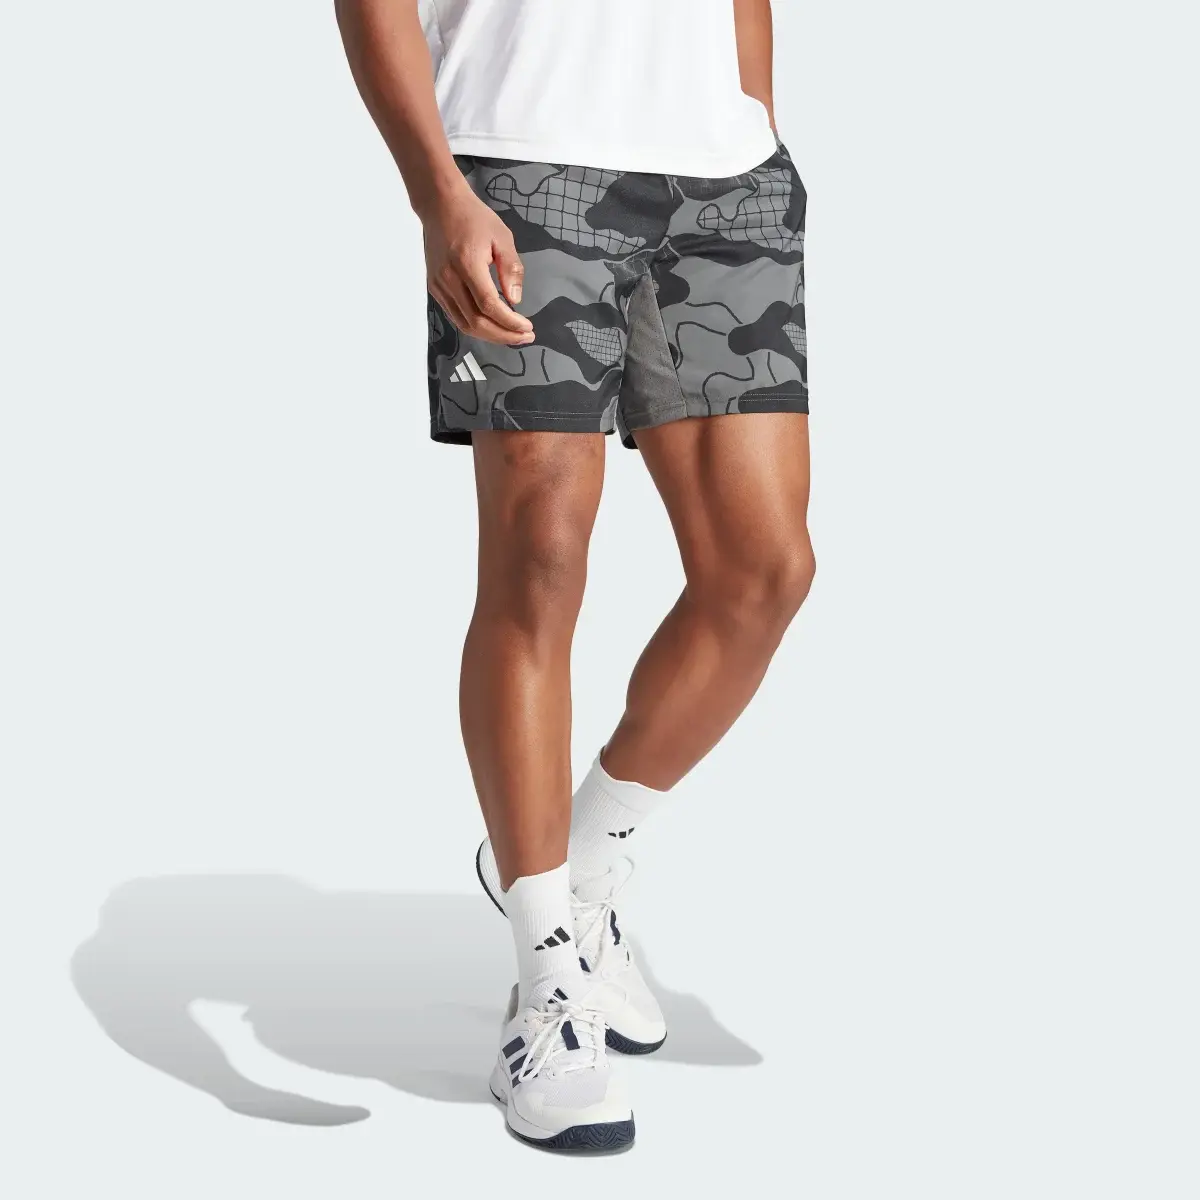 Adidas Club Graphic Tennis Shorts. 1